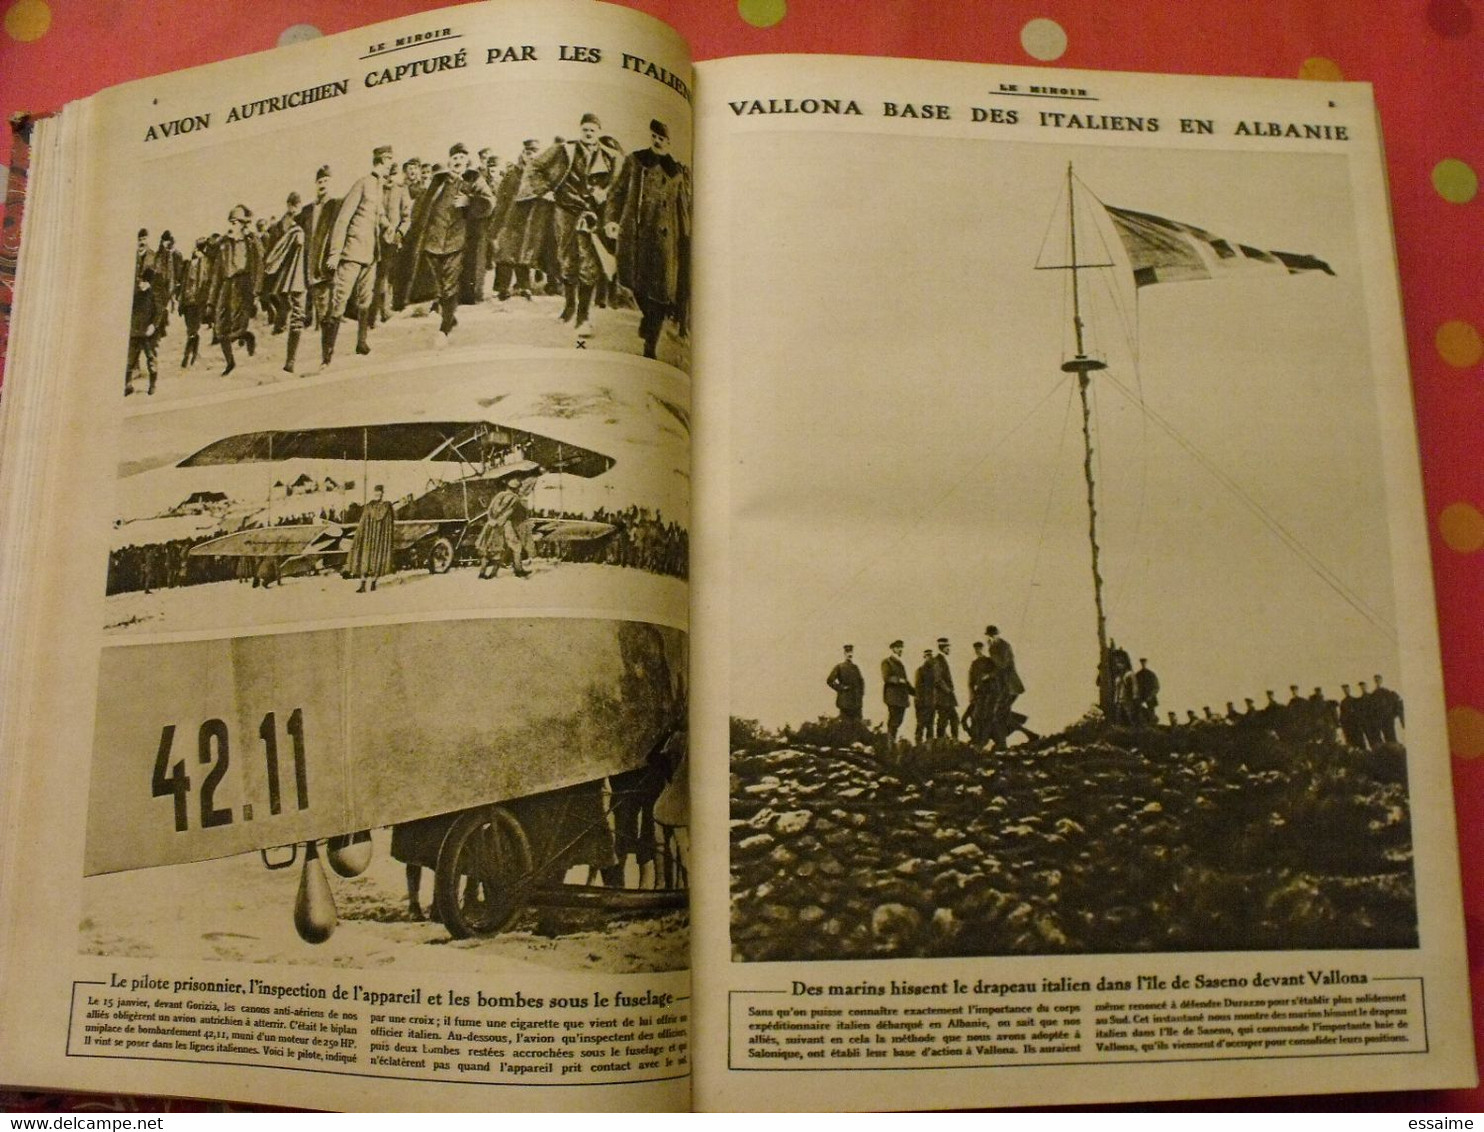 Le miroir recueil reliure 1916 (année complète 53 n° ). guerre 14-18 très illustrée, documentée. zeppelin avion soldats